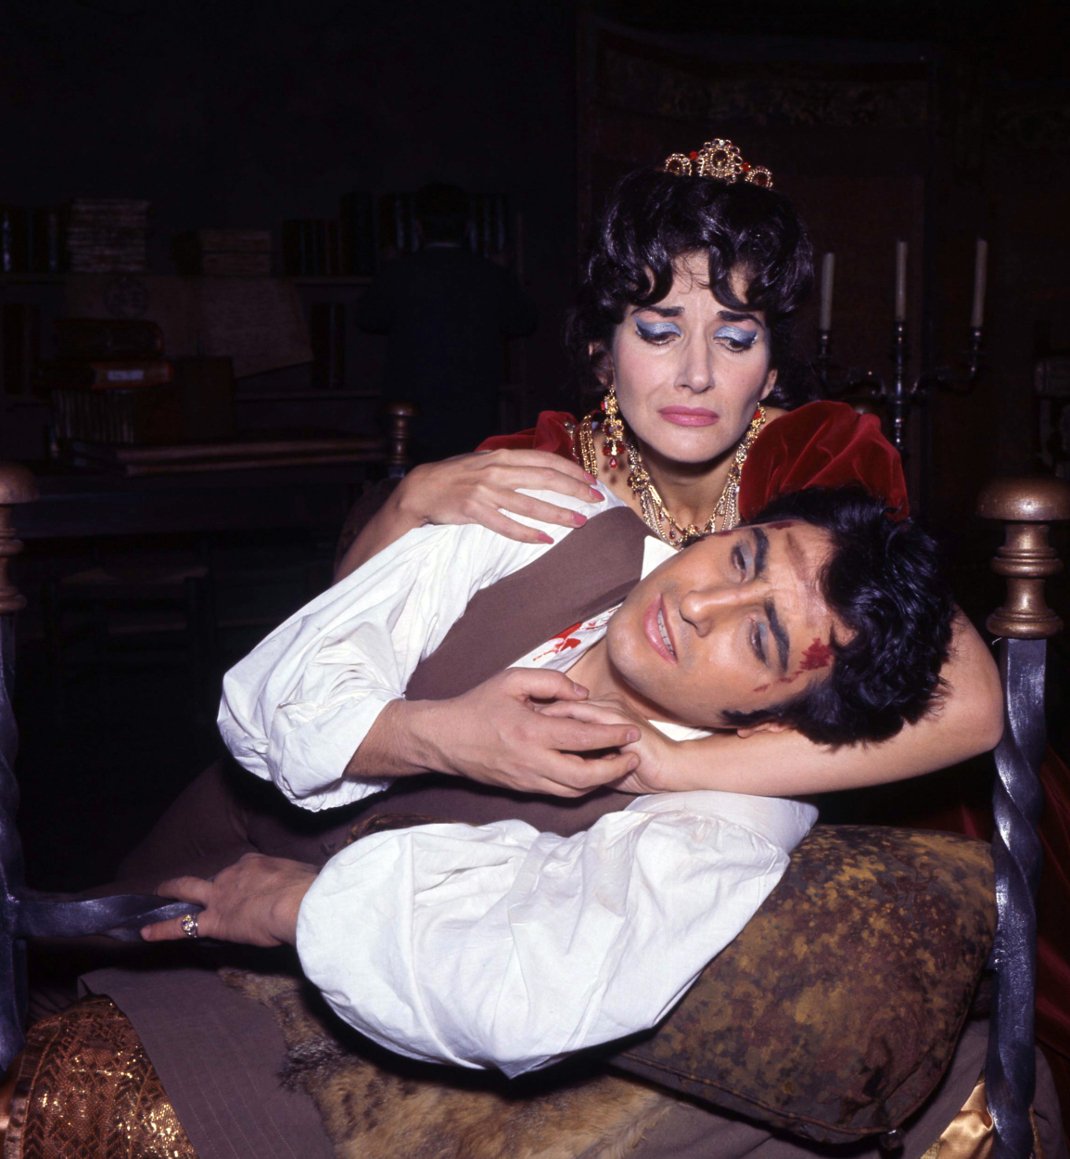 Η Μαρία Κάλλας στο οπερατικό της φινάλε στο Κόβεντ Γκάρντεν, στις 5 Ιουλίου 1965. Φωτογραφία: AP